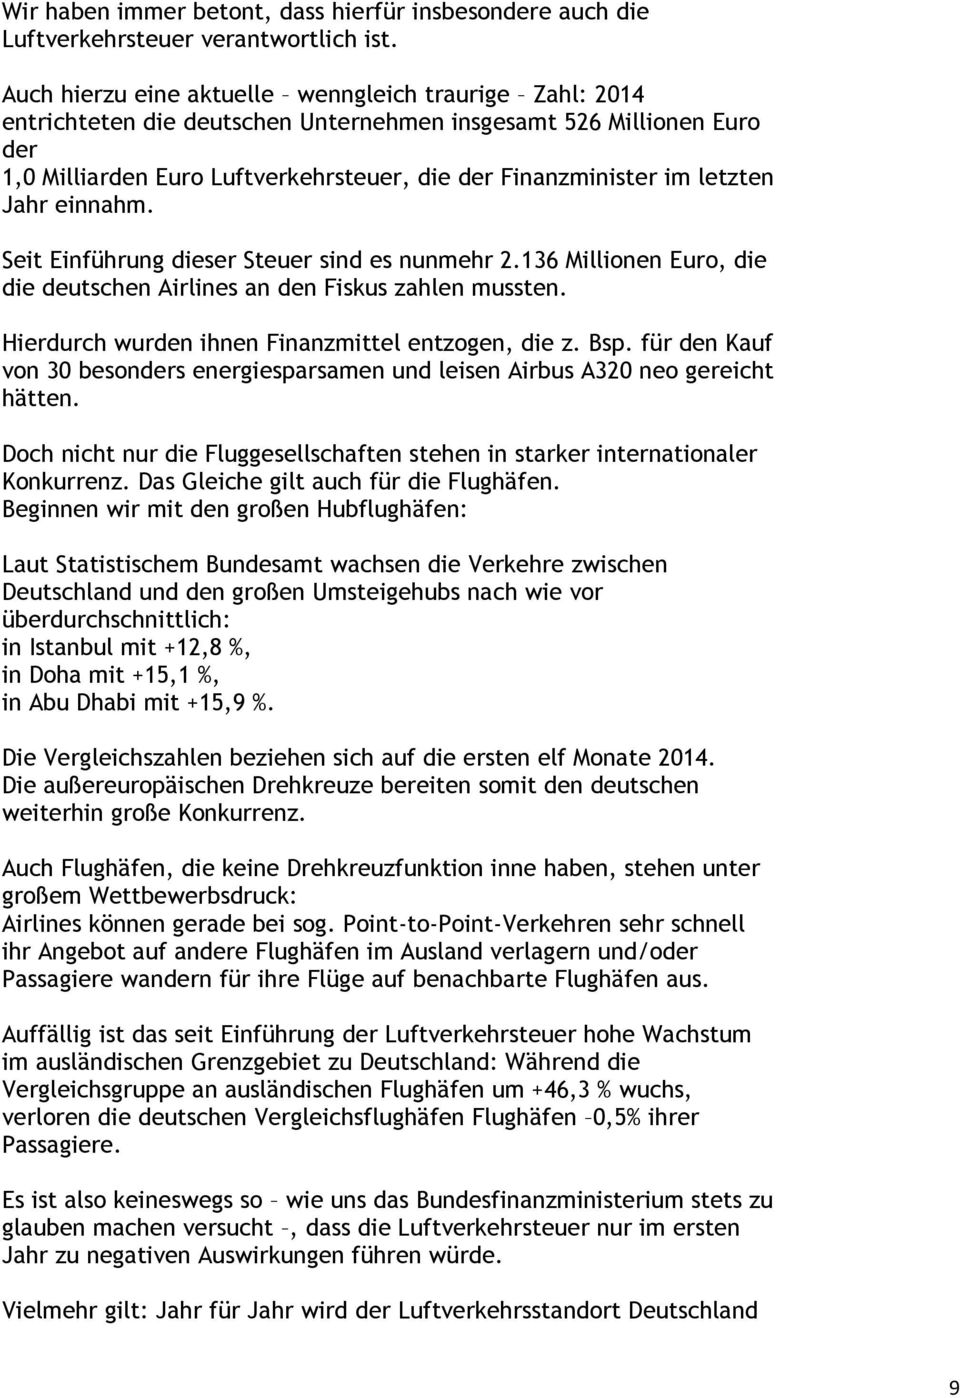 letzten Jahr einnahm. Seit Einführung dieser Steuer sind es nunmehr 2.136 Millionen Euro, die die deutschen Airlines an den Fiskus zahlen mussten. Hierdurch wurden ihnen Finanzmittel entzogen, die z.